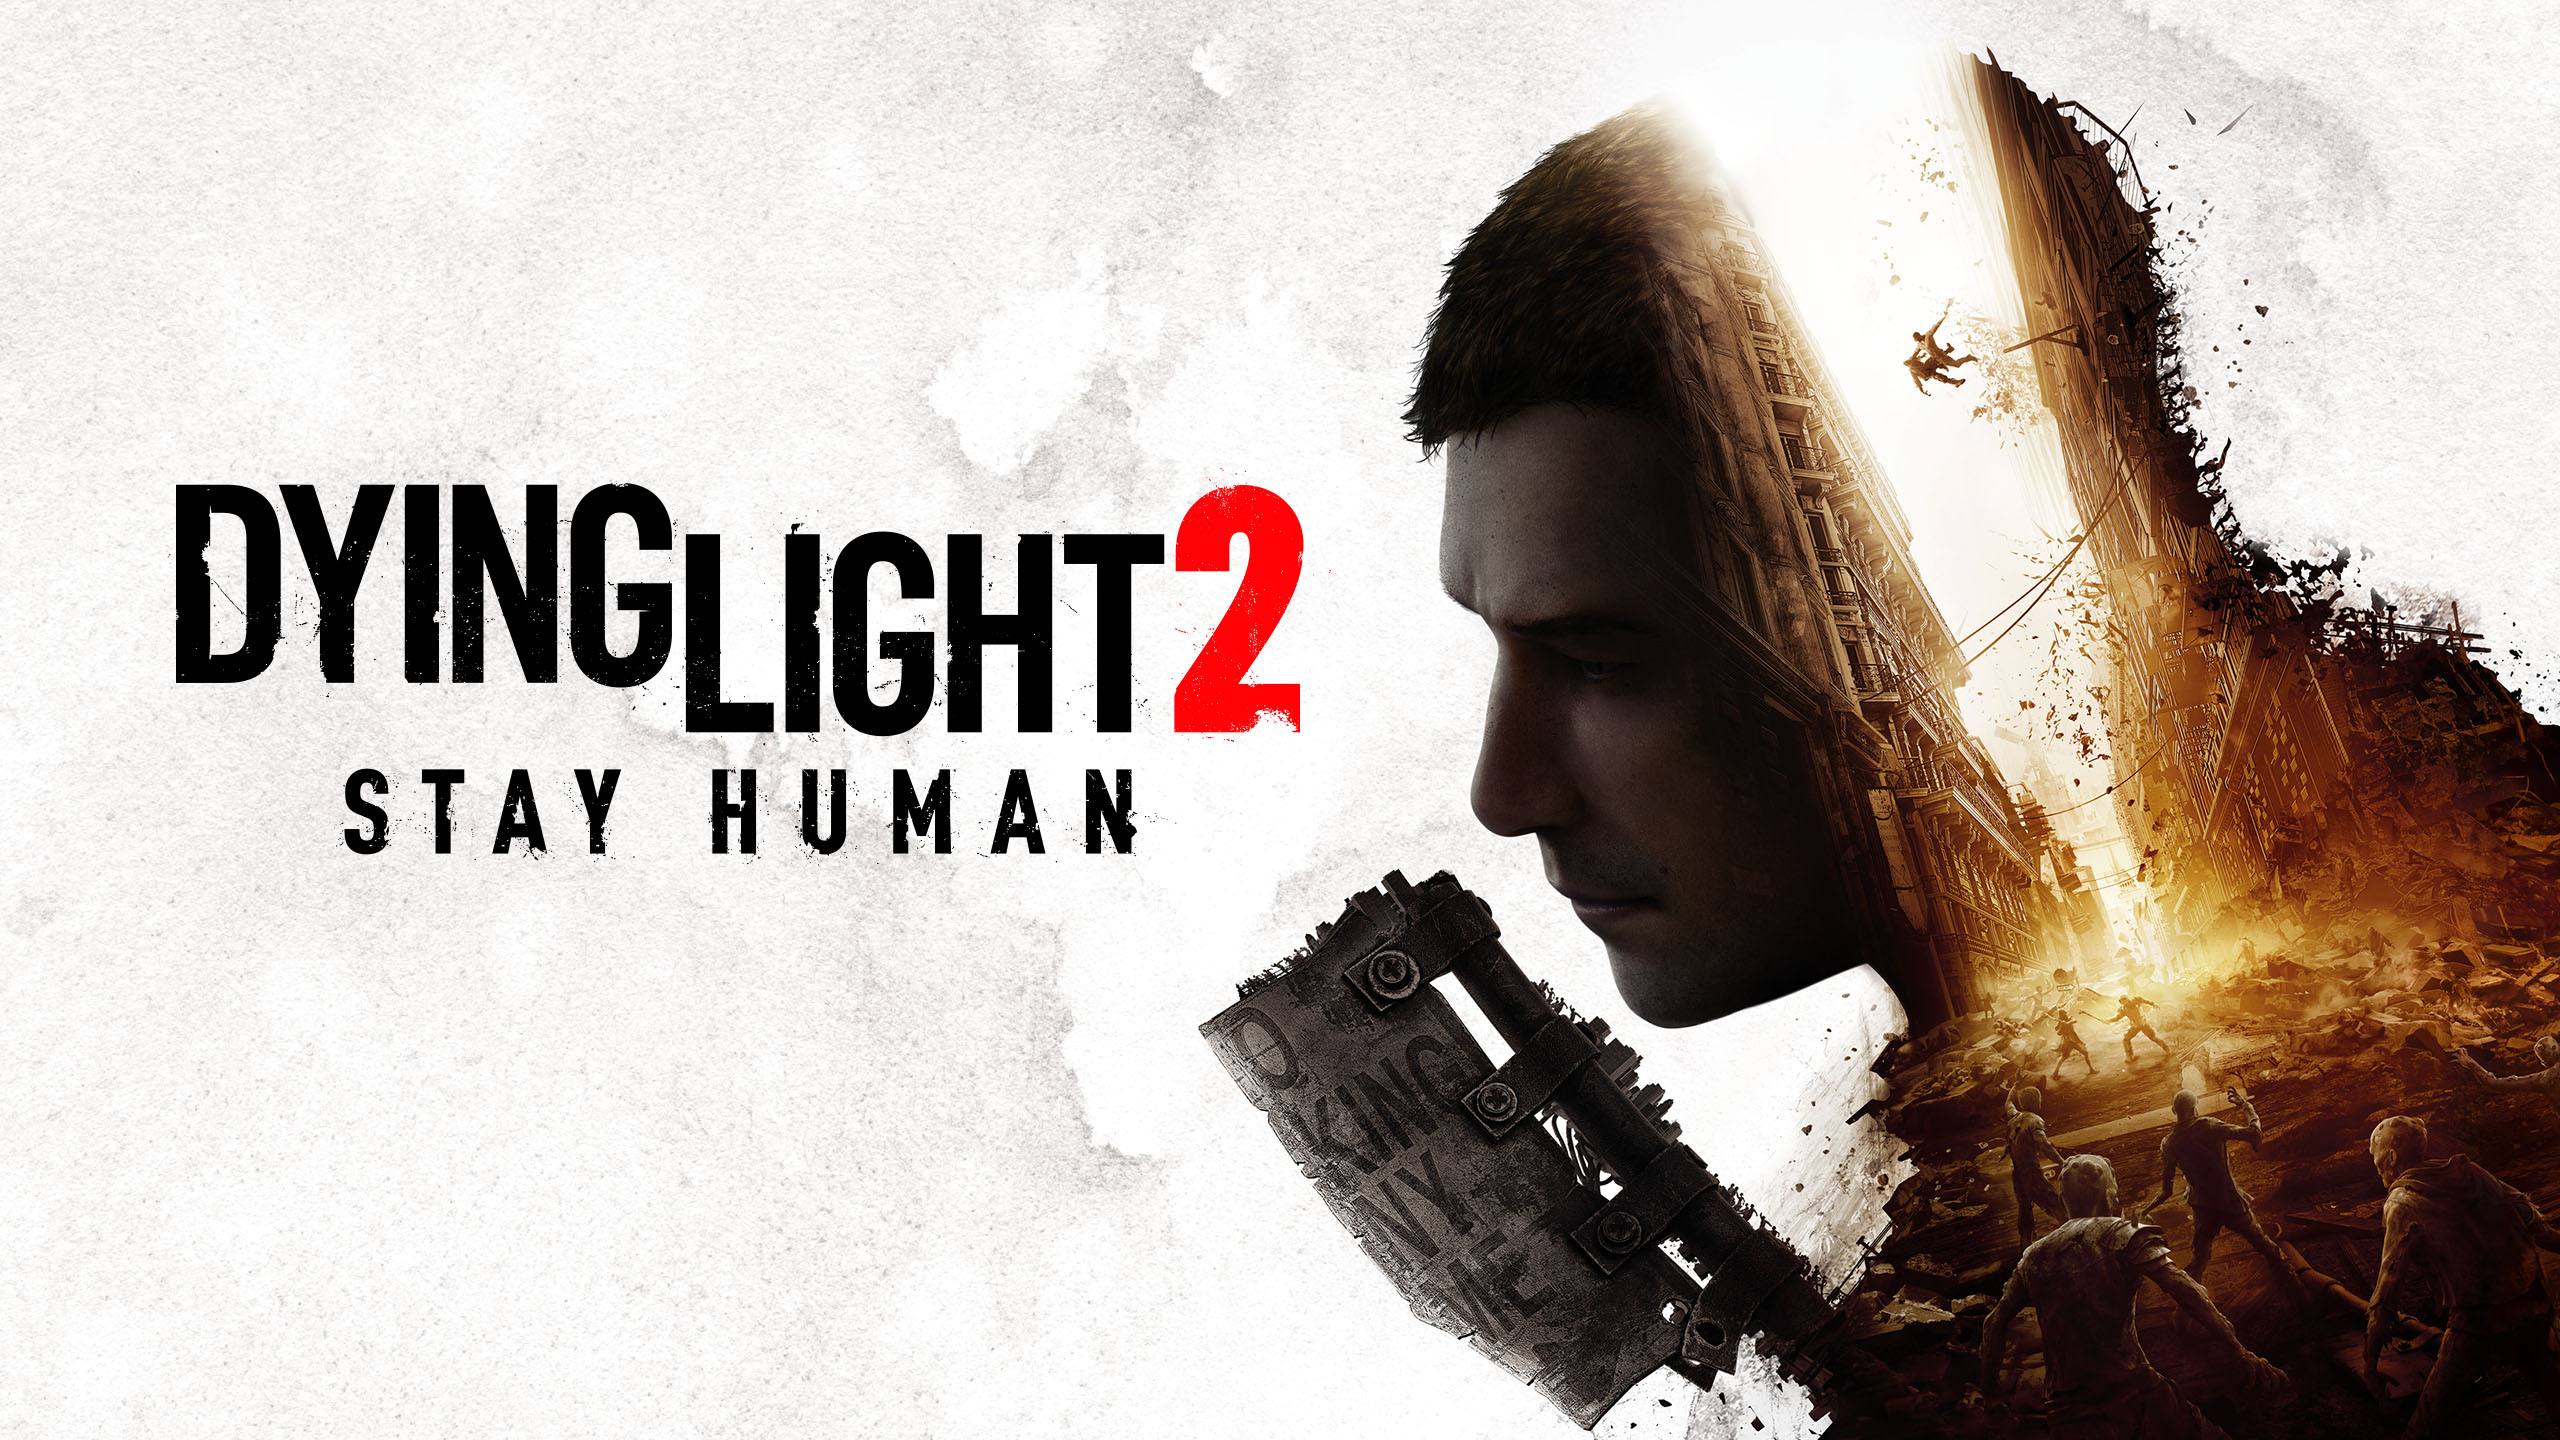 نسخة السويتش من لعبة Dying Light 2: Stay Human لن تصدر مع بقية النسخ